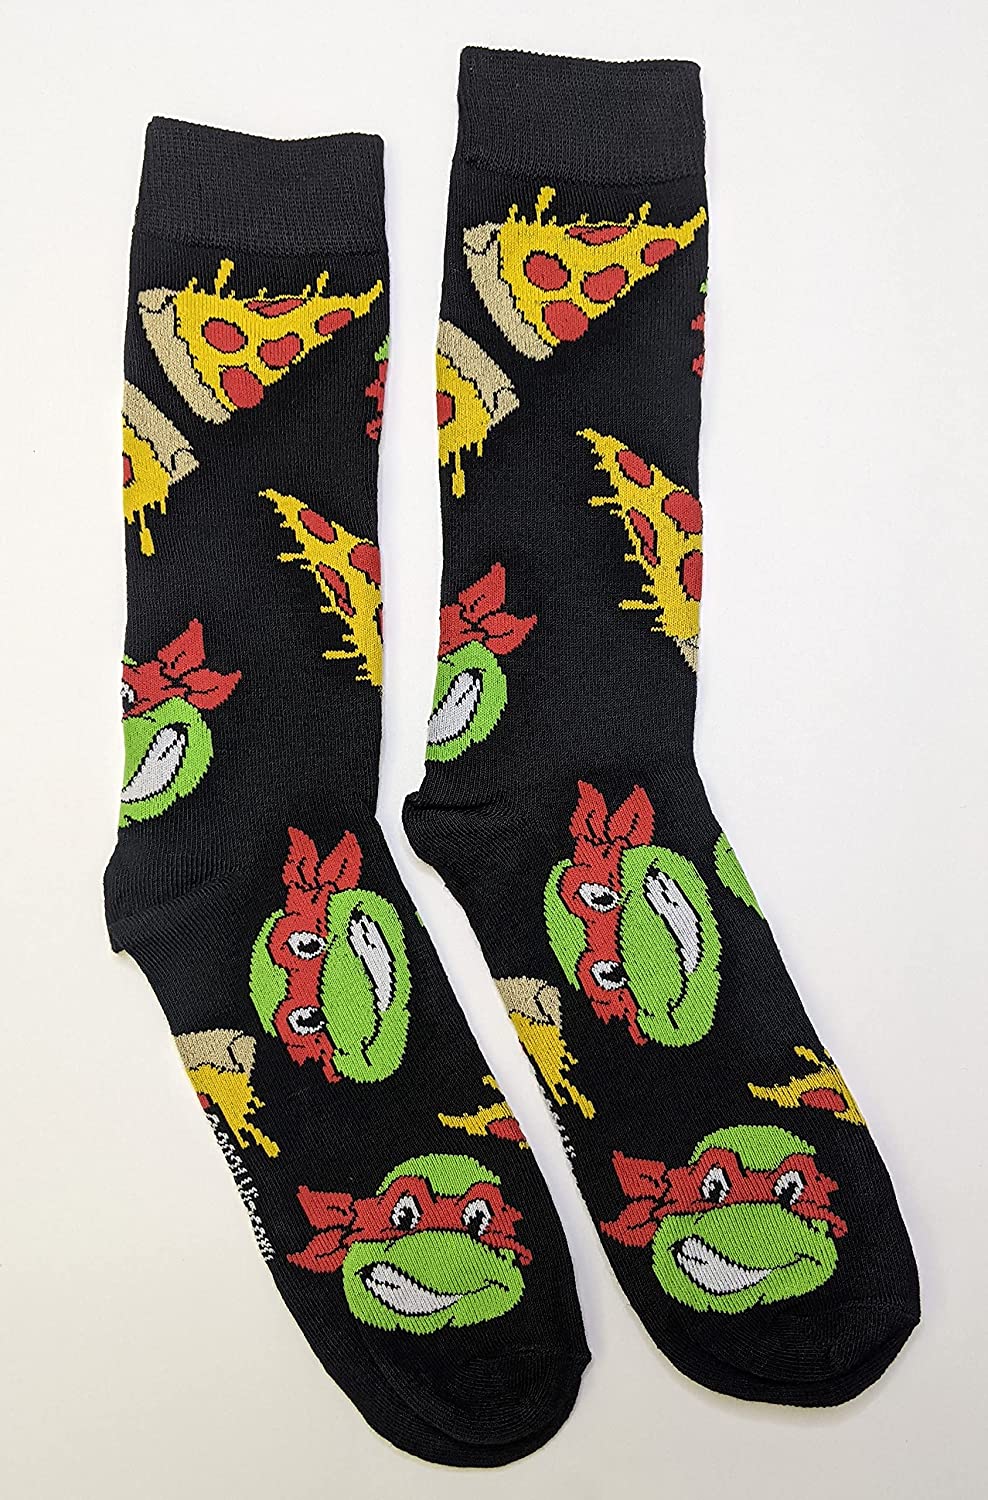 Nickelodeon Teenage Mutant Ninja Turtles Pizza Men's Crew Socks Two Pair Pack